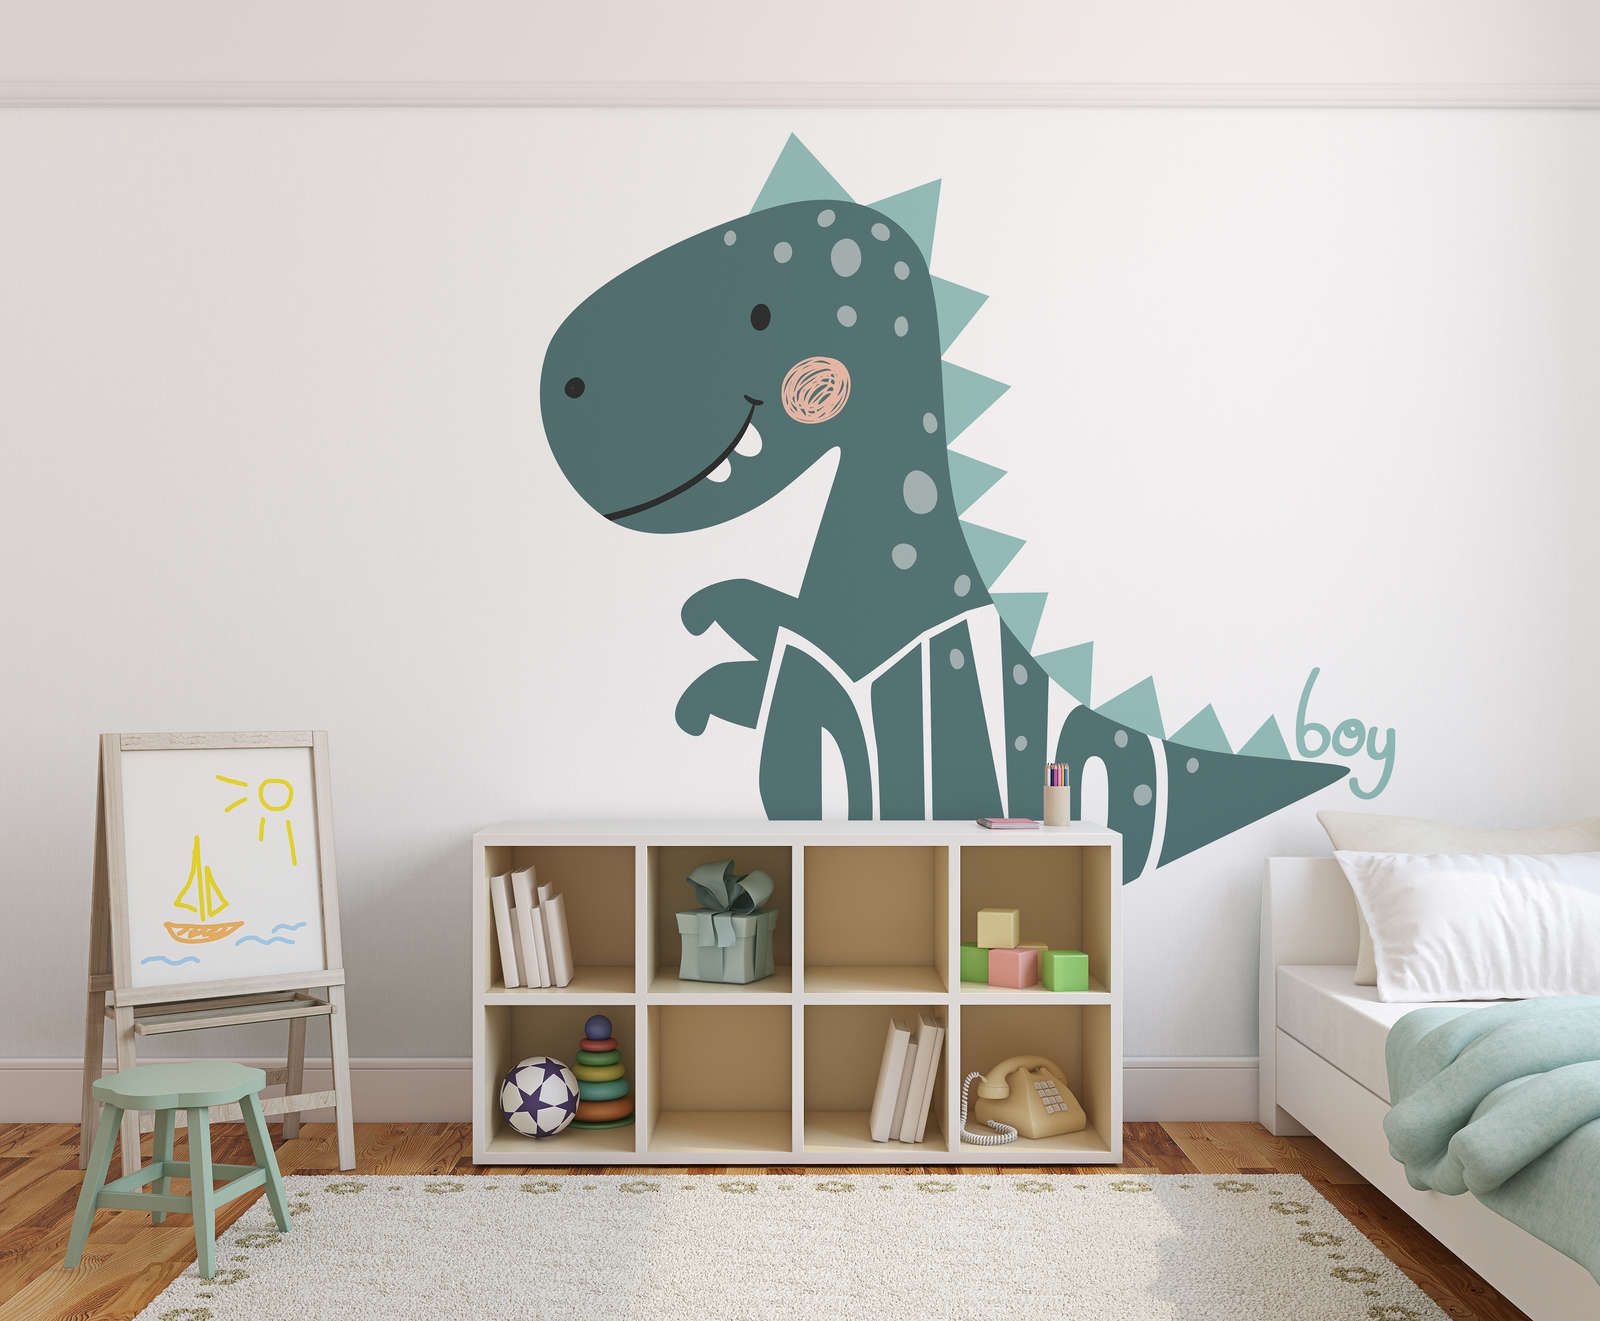             Fototapete fürs Kinderzimmer mit Dinosaurier – Glattes & mattes Vlies
        